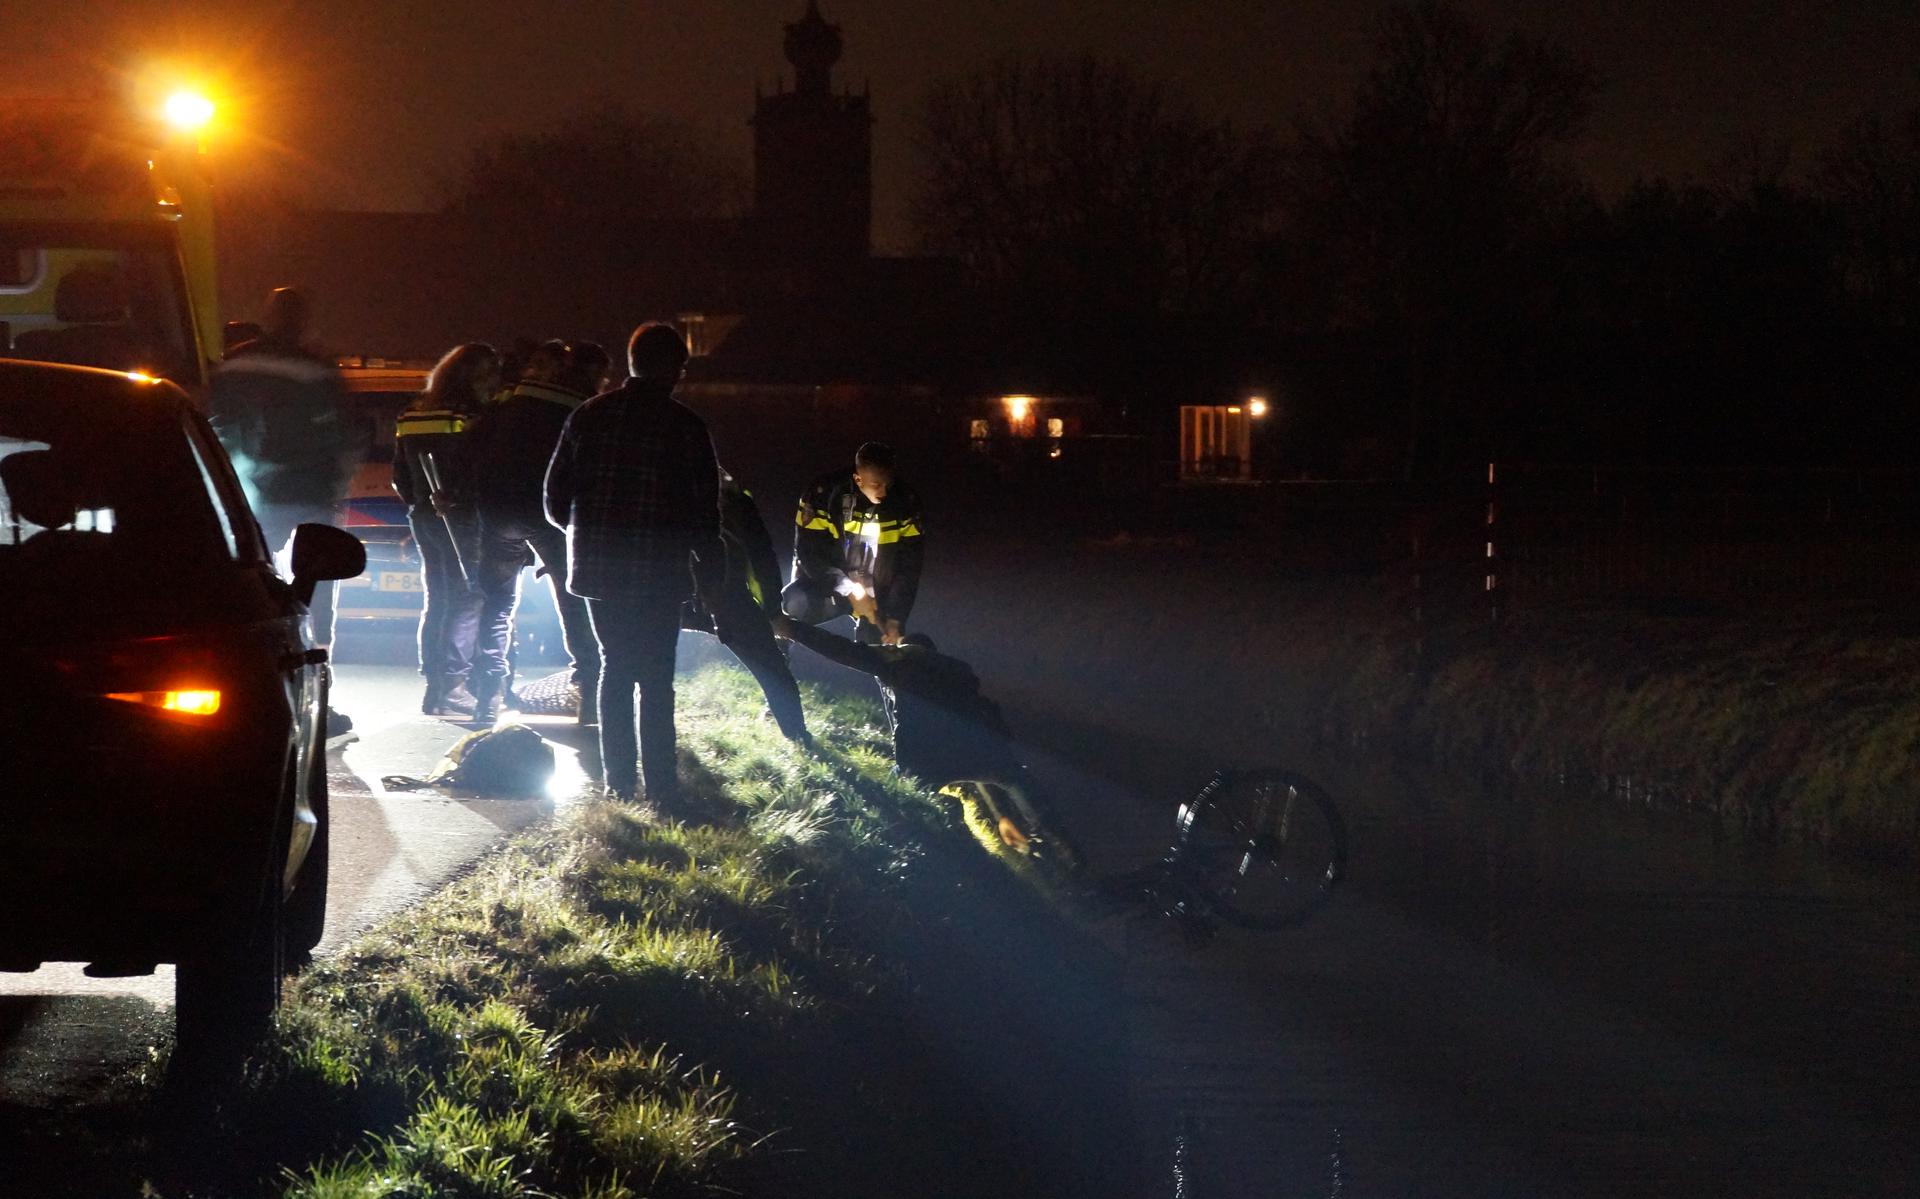 De mevrouw die met haar fiets in de sloot belandde, werd met hulp van omstanders uit het water gehaald.